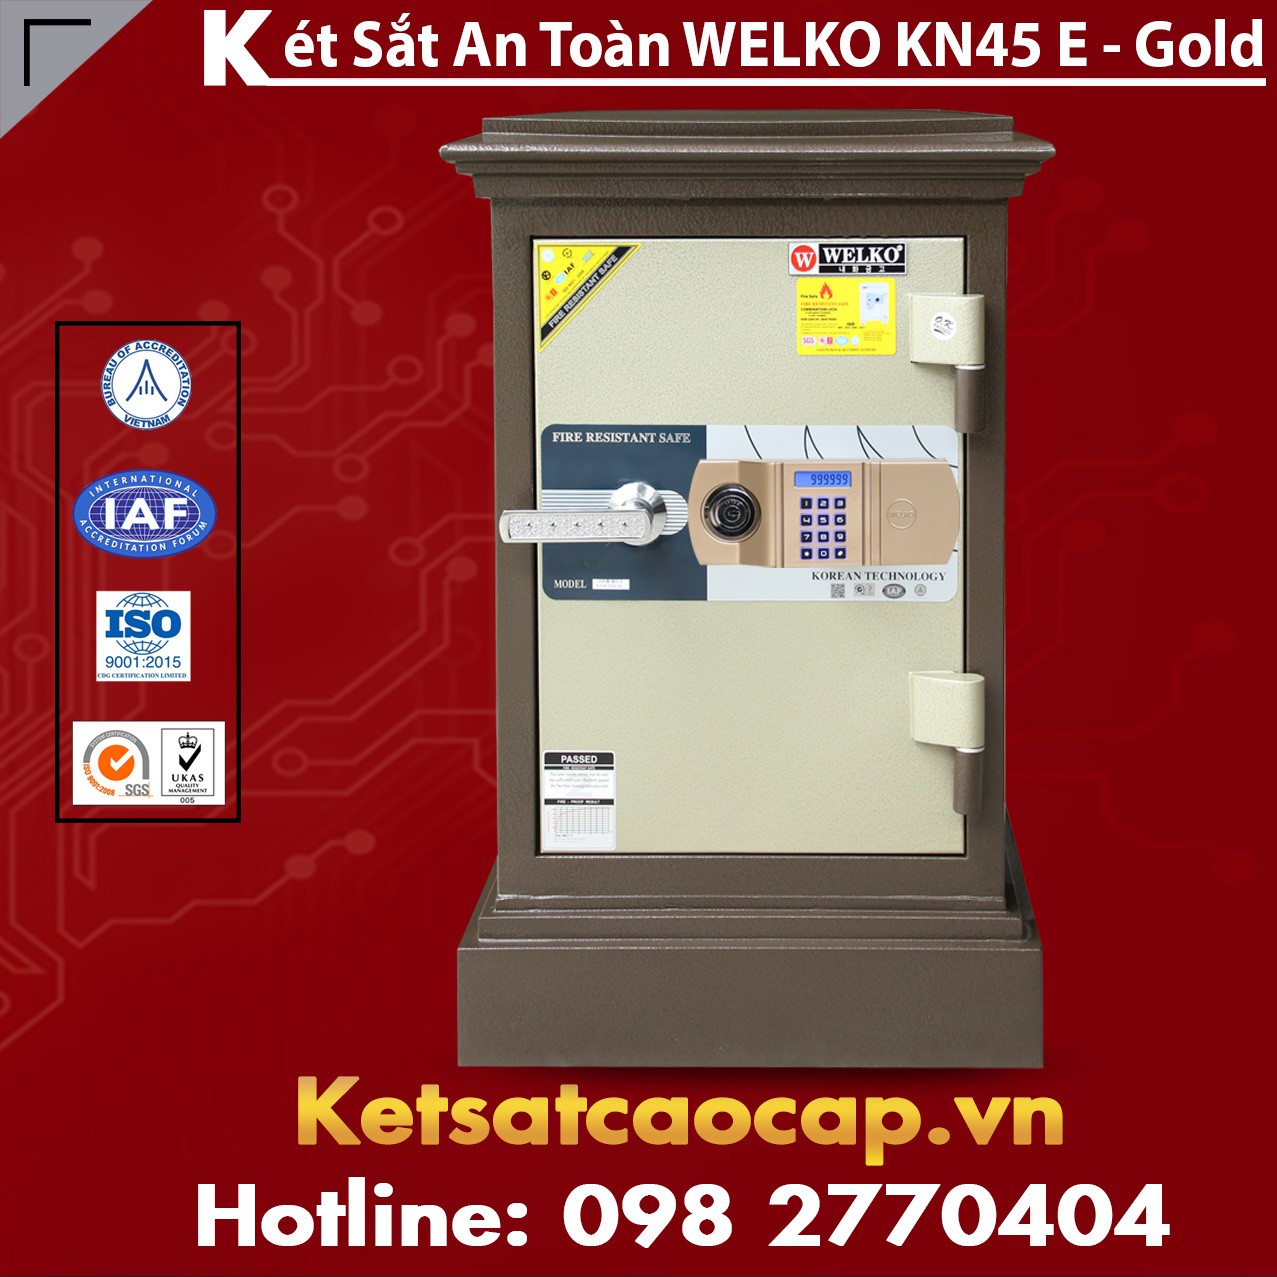 Két Sắt Công Ty Văn Phòng WELKO KN45 Brown - E Gold